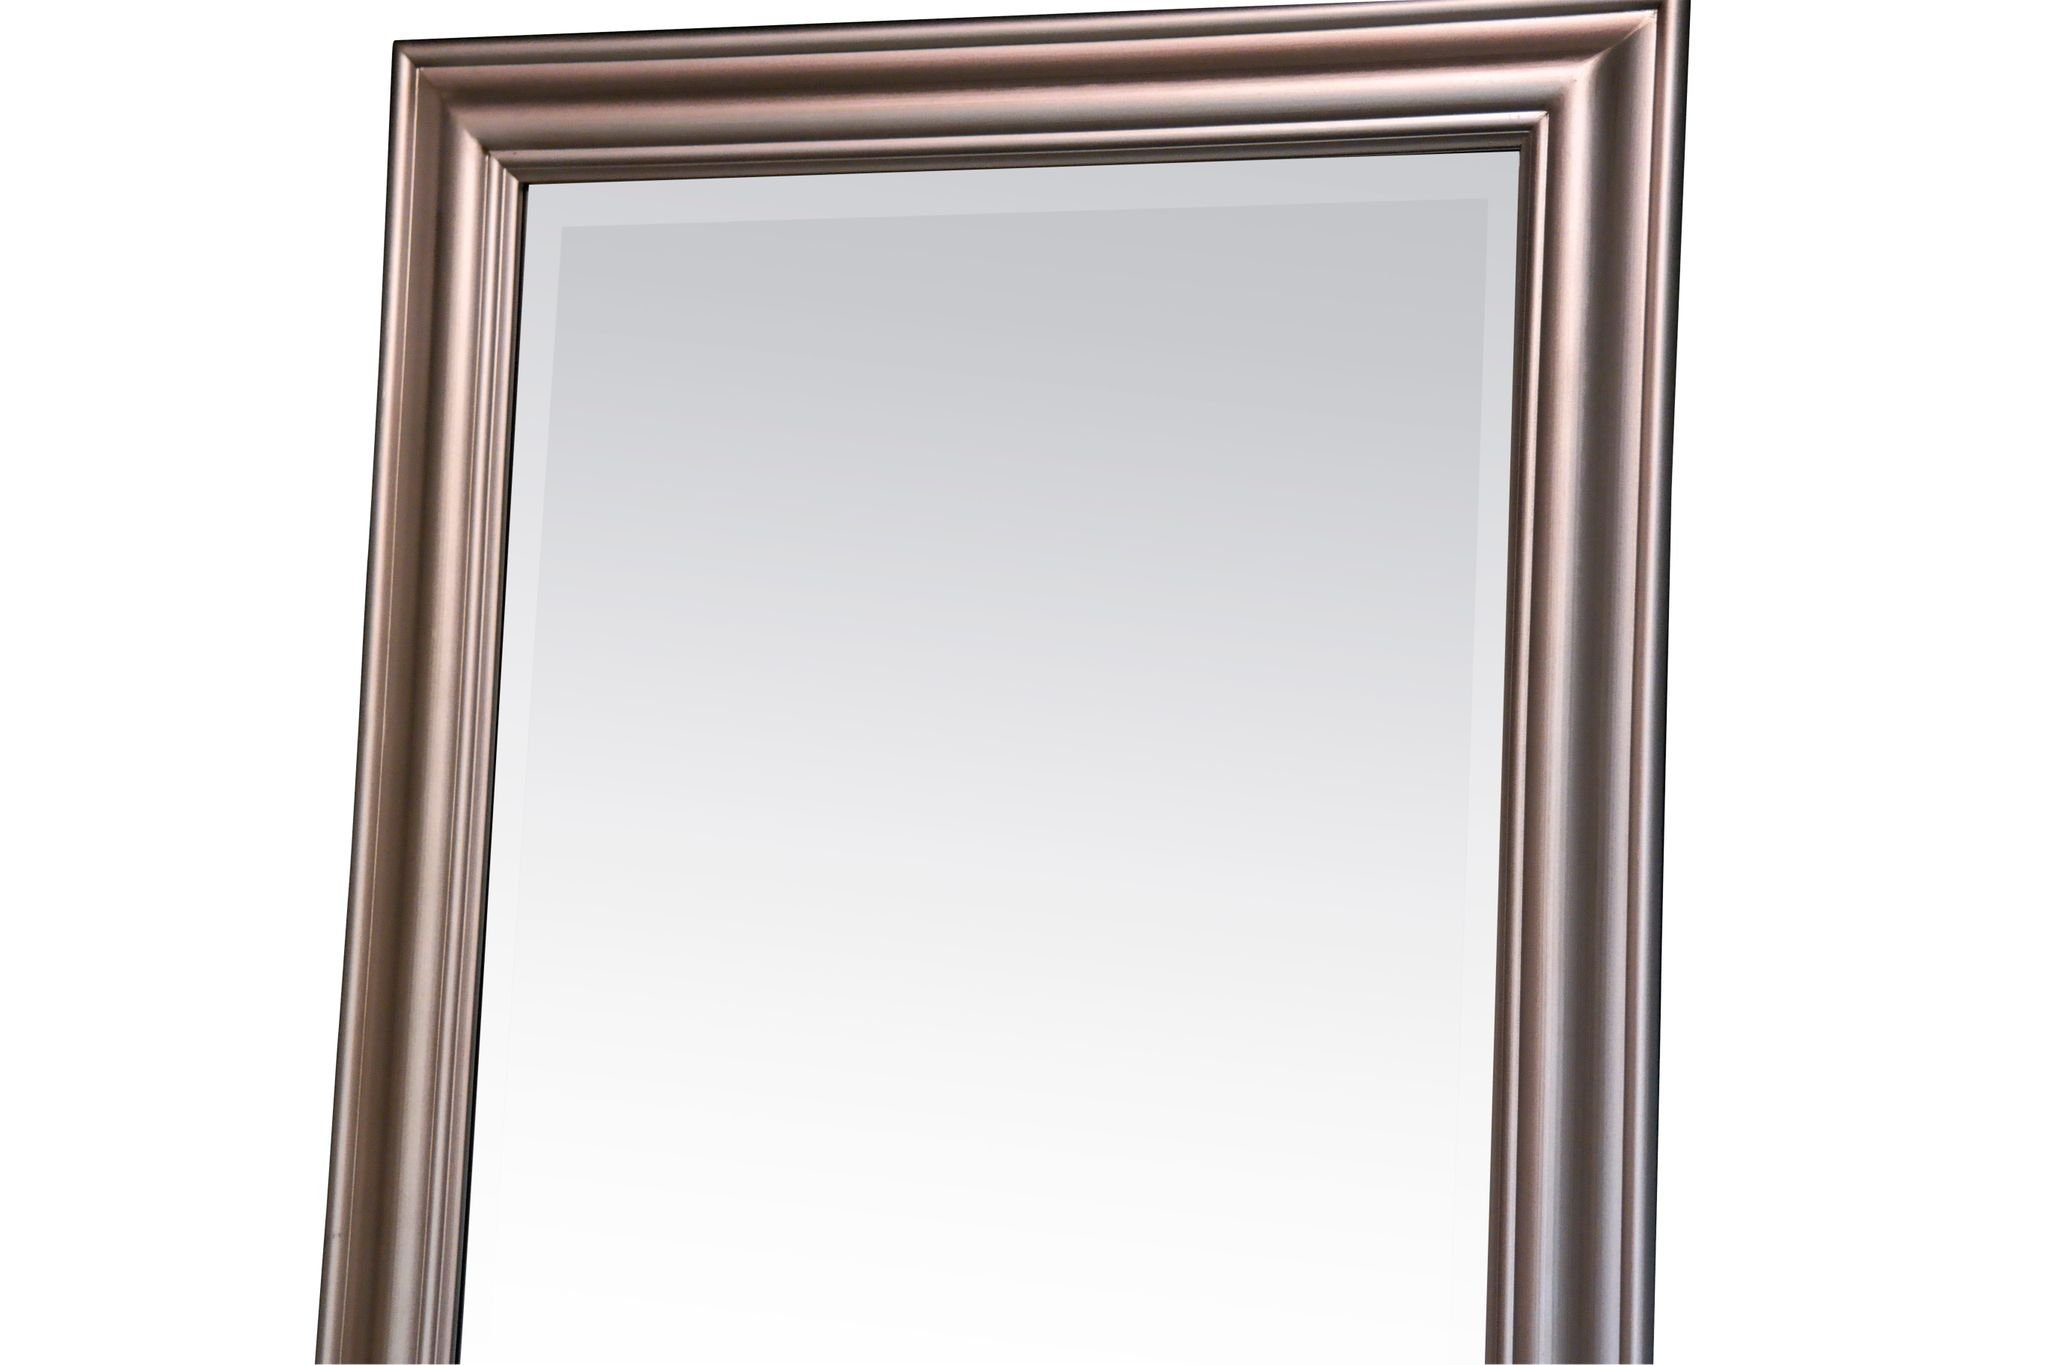 elbmöbel Wandspiegel 150x60x7 schlicht Spiegel 150cm, silber Spiegel: Landhausstil klassischer silber Wandspiegel